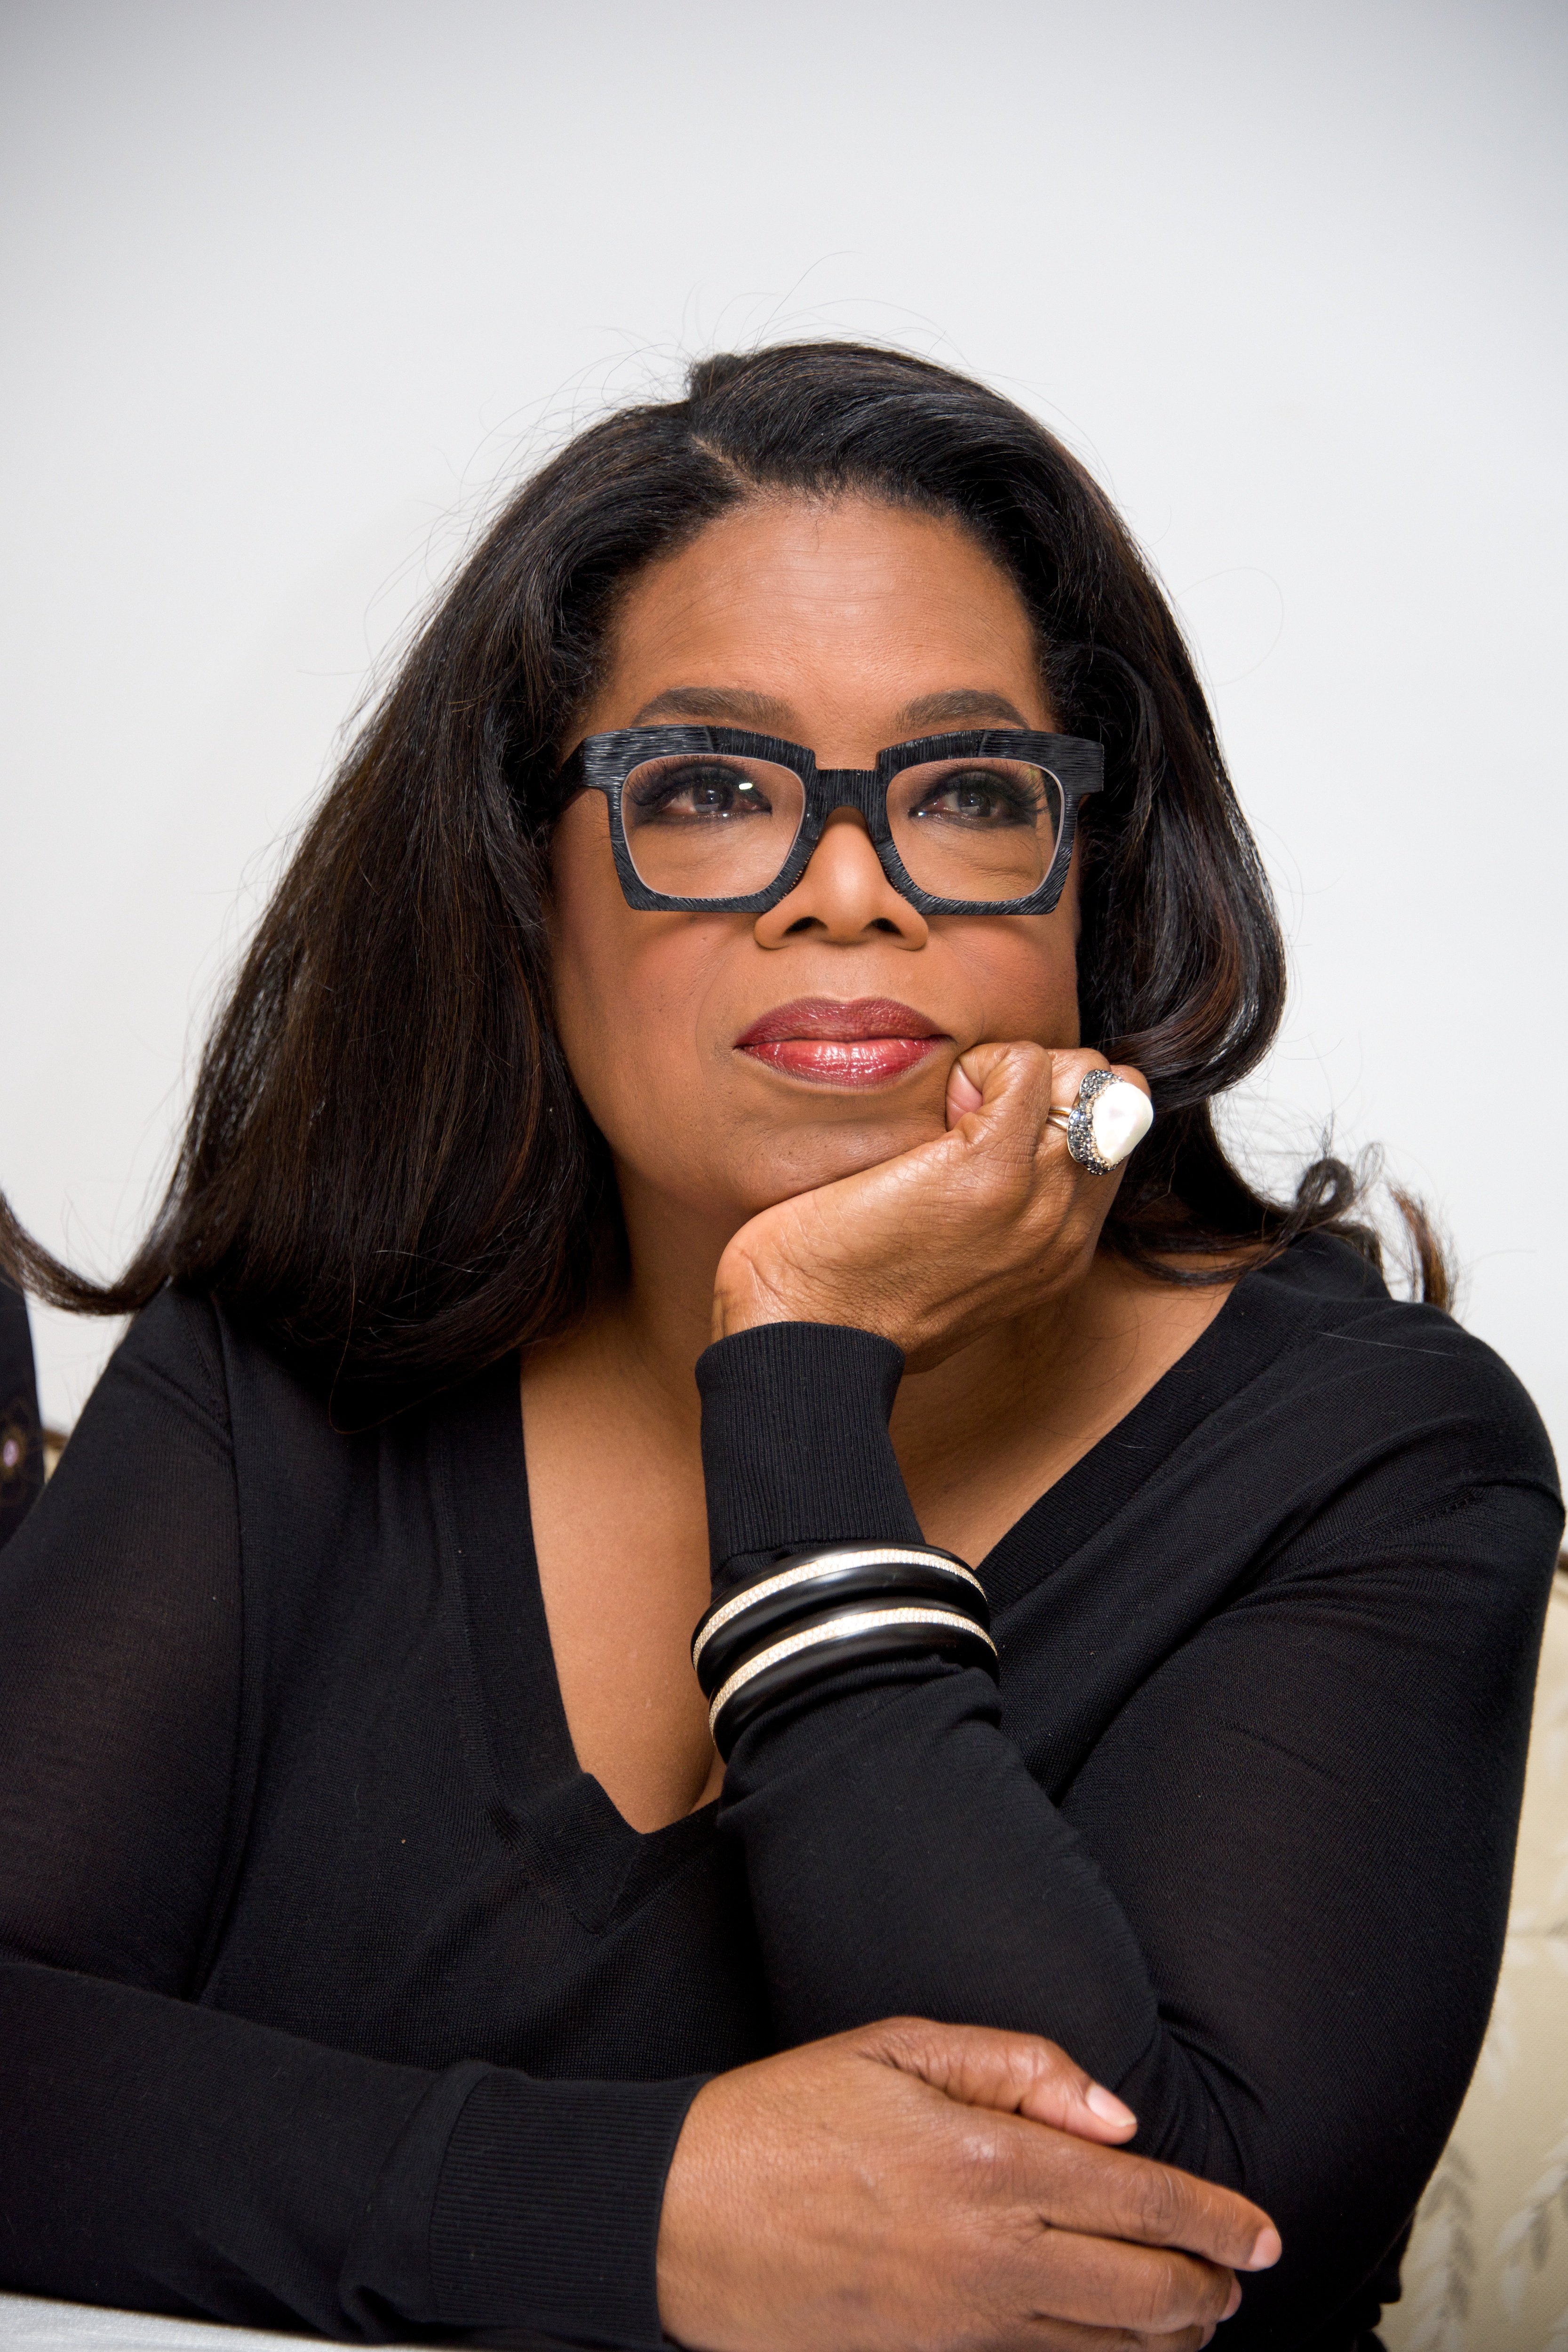 La magnat des médias Oprah Winfrey lors de la conférence de presse de "Greenleaf" qui s'est tenue à l'hôtel Four Seasons le 26 septembre 2016 à Beverly Hills, en Californie. / Source : Getty Images